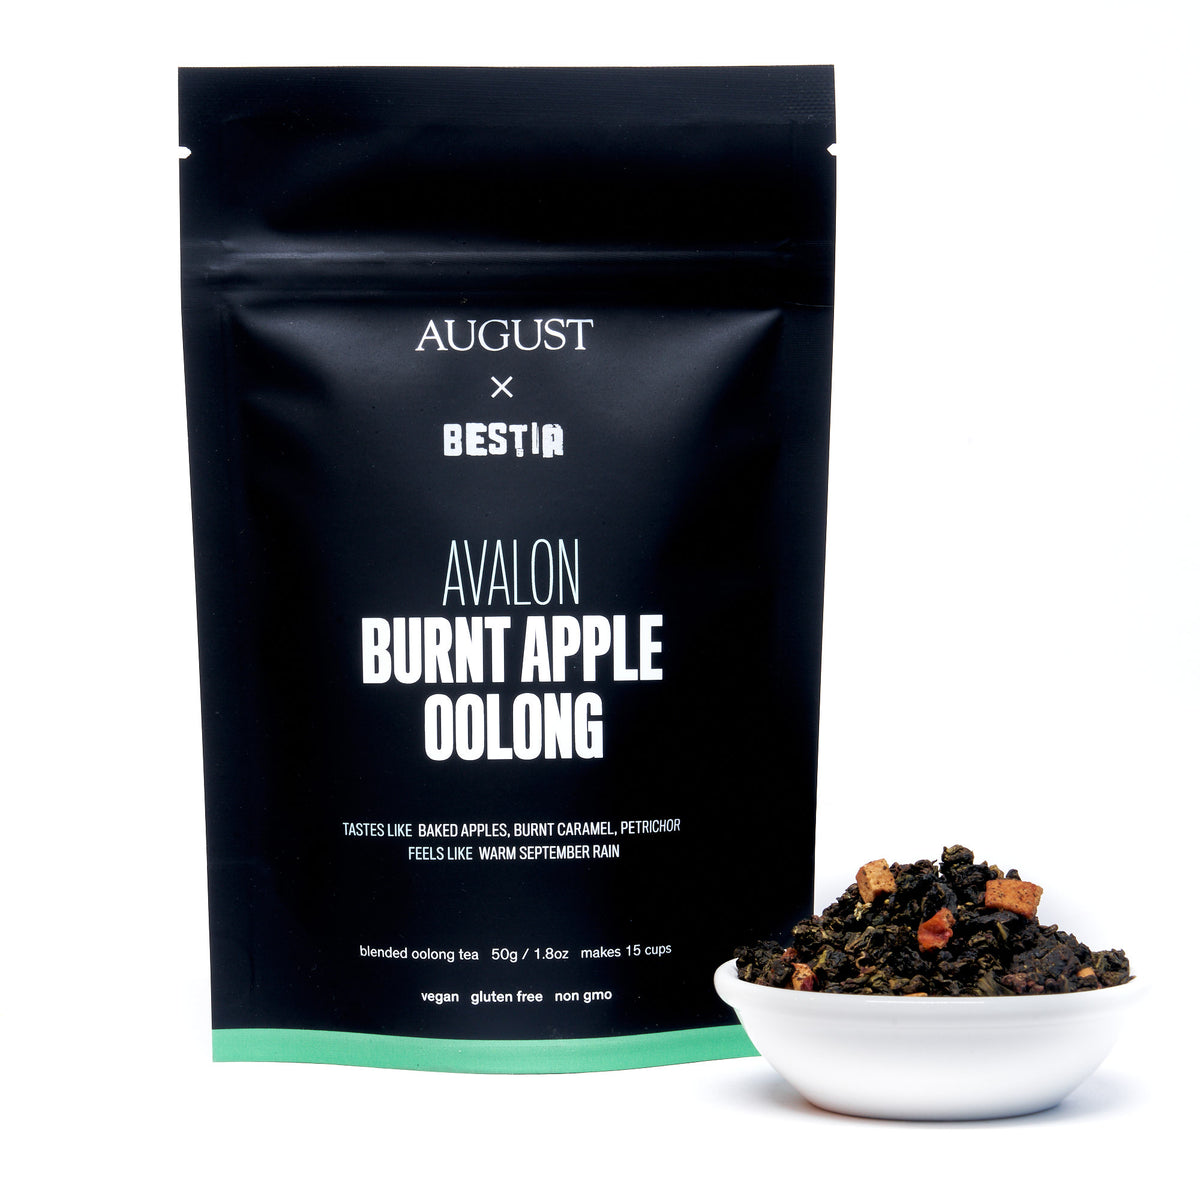 Avalon: Burnt Apple Oolong Tea